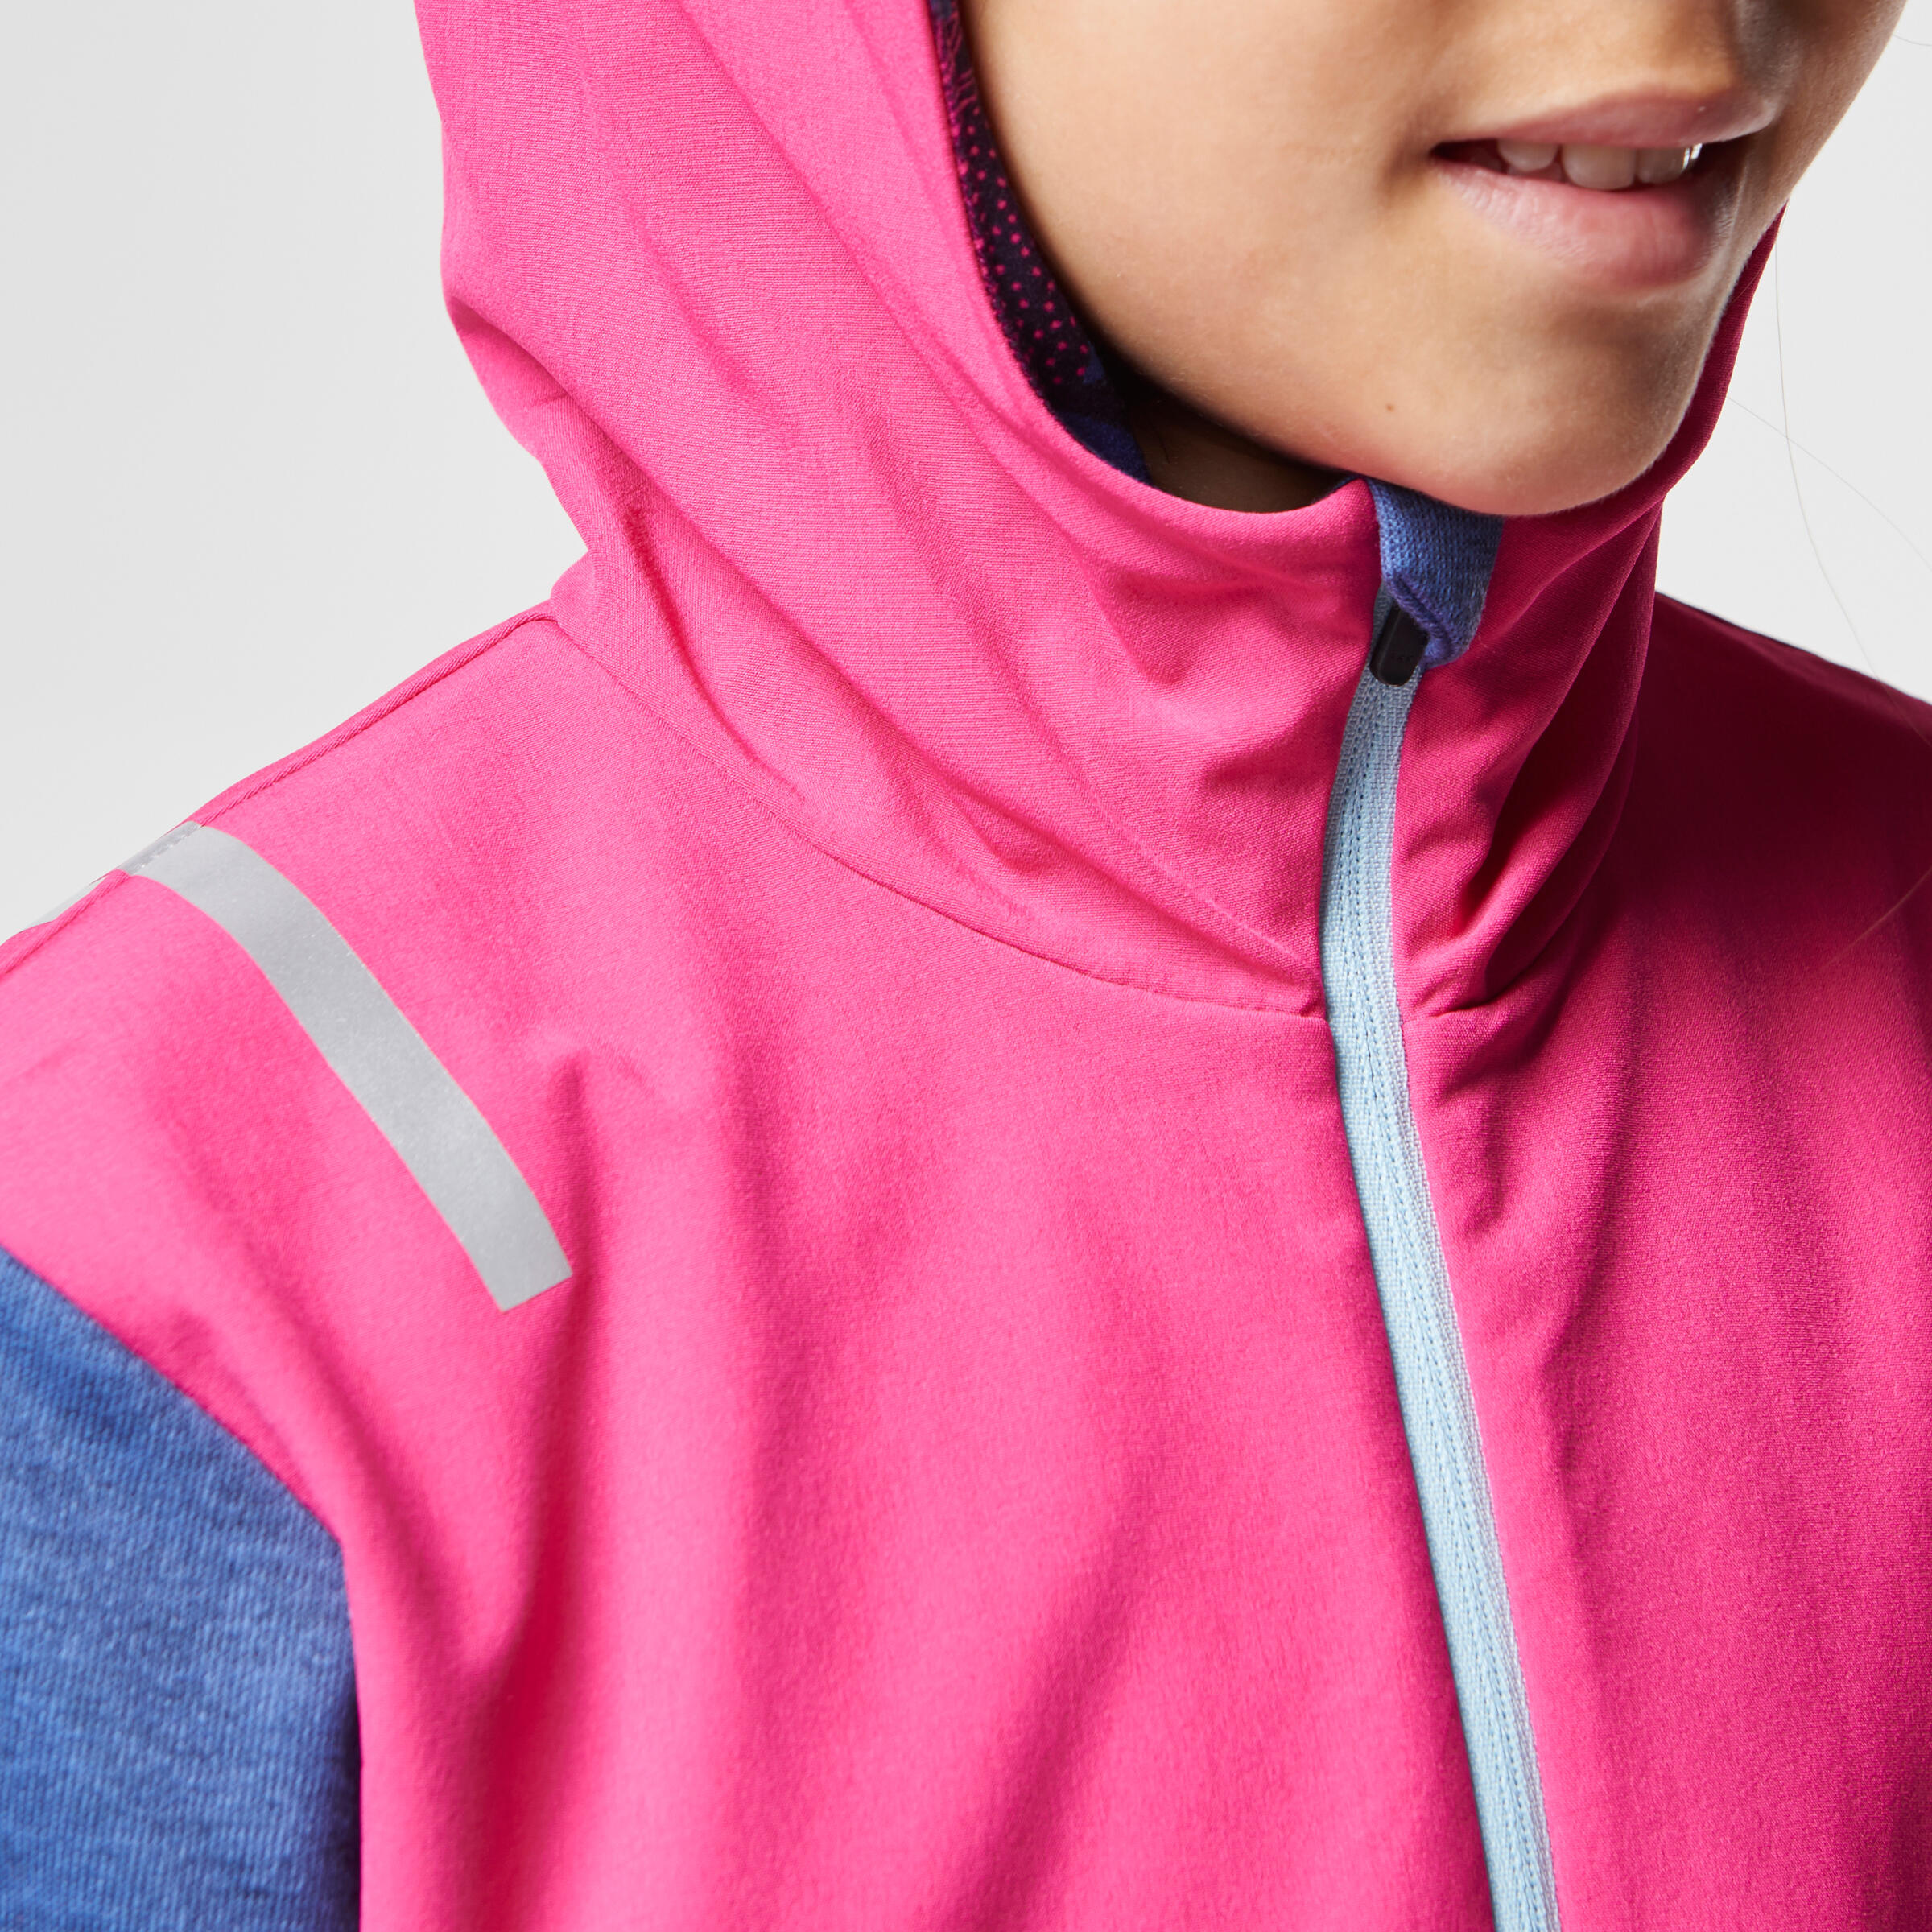 Elio Children's Running Hooded Jersey - Pink/Blue
 6/16